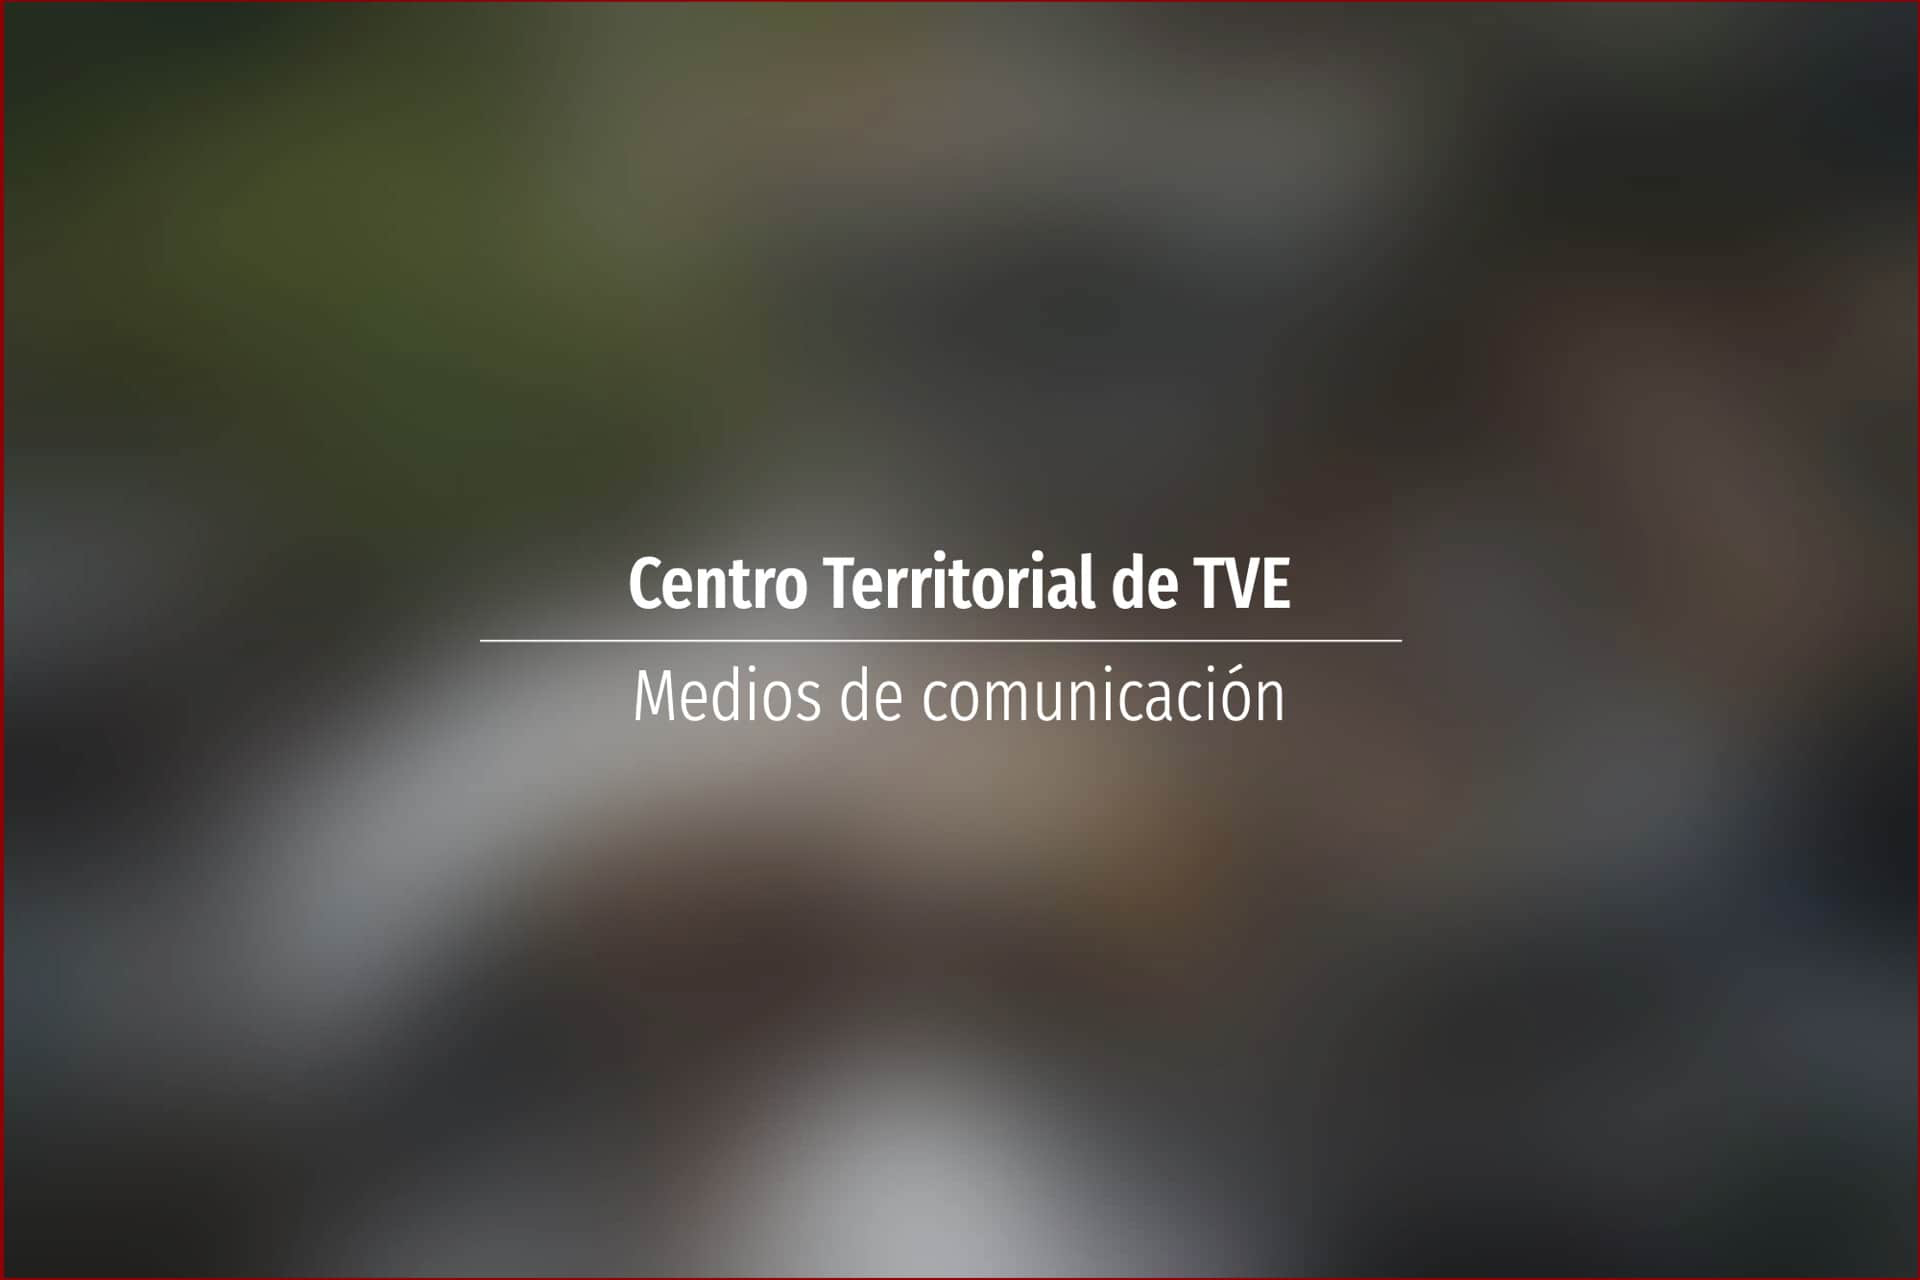 Centro Territorial de TVE